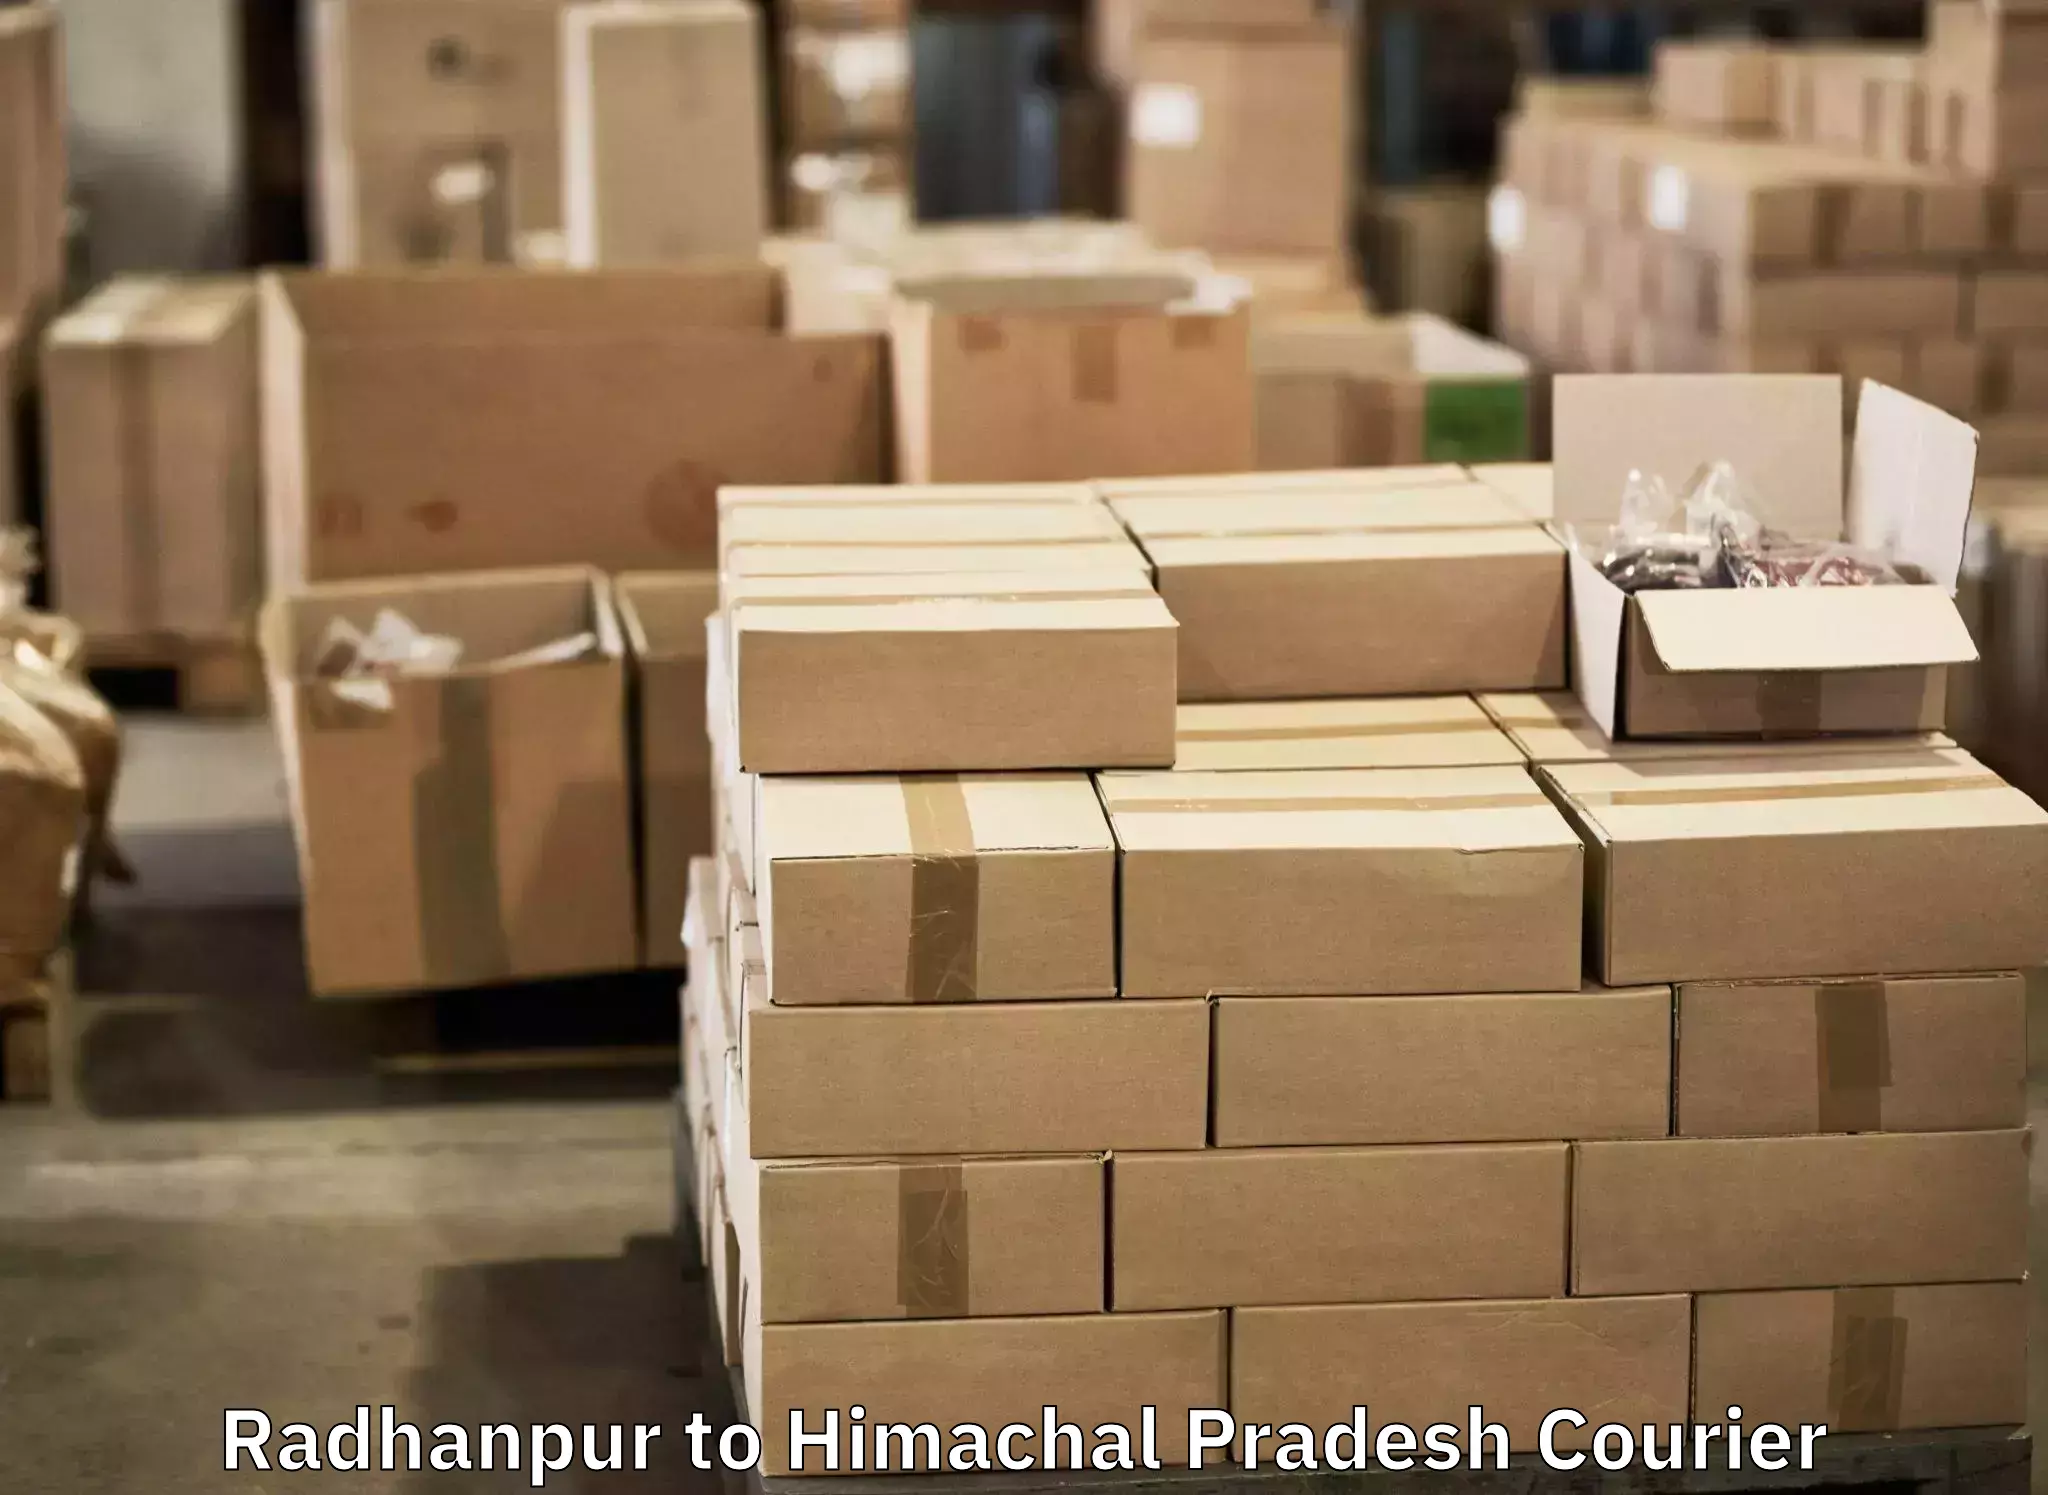 Baggage shipping service Radhanpur to IIT Mandi